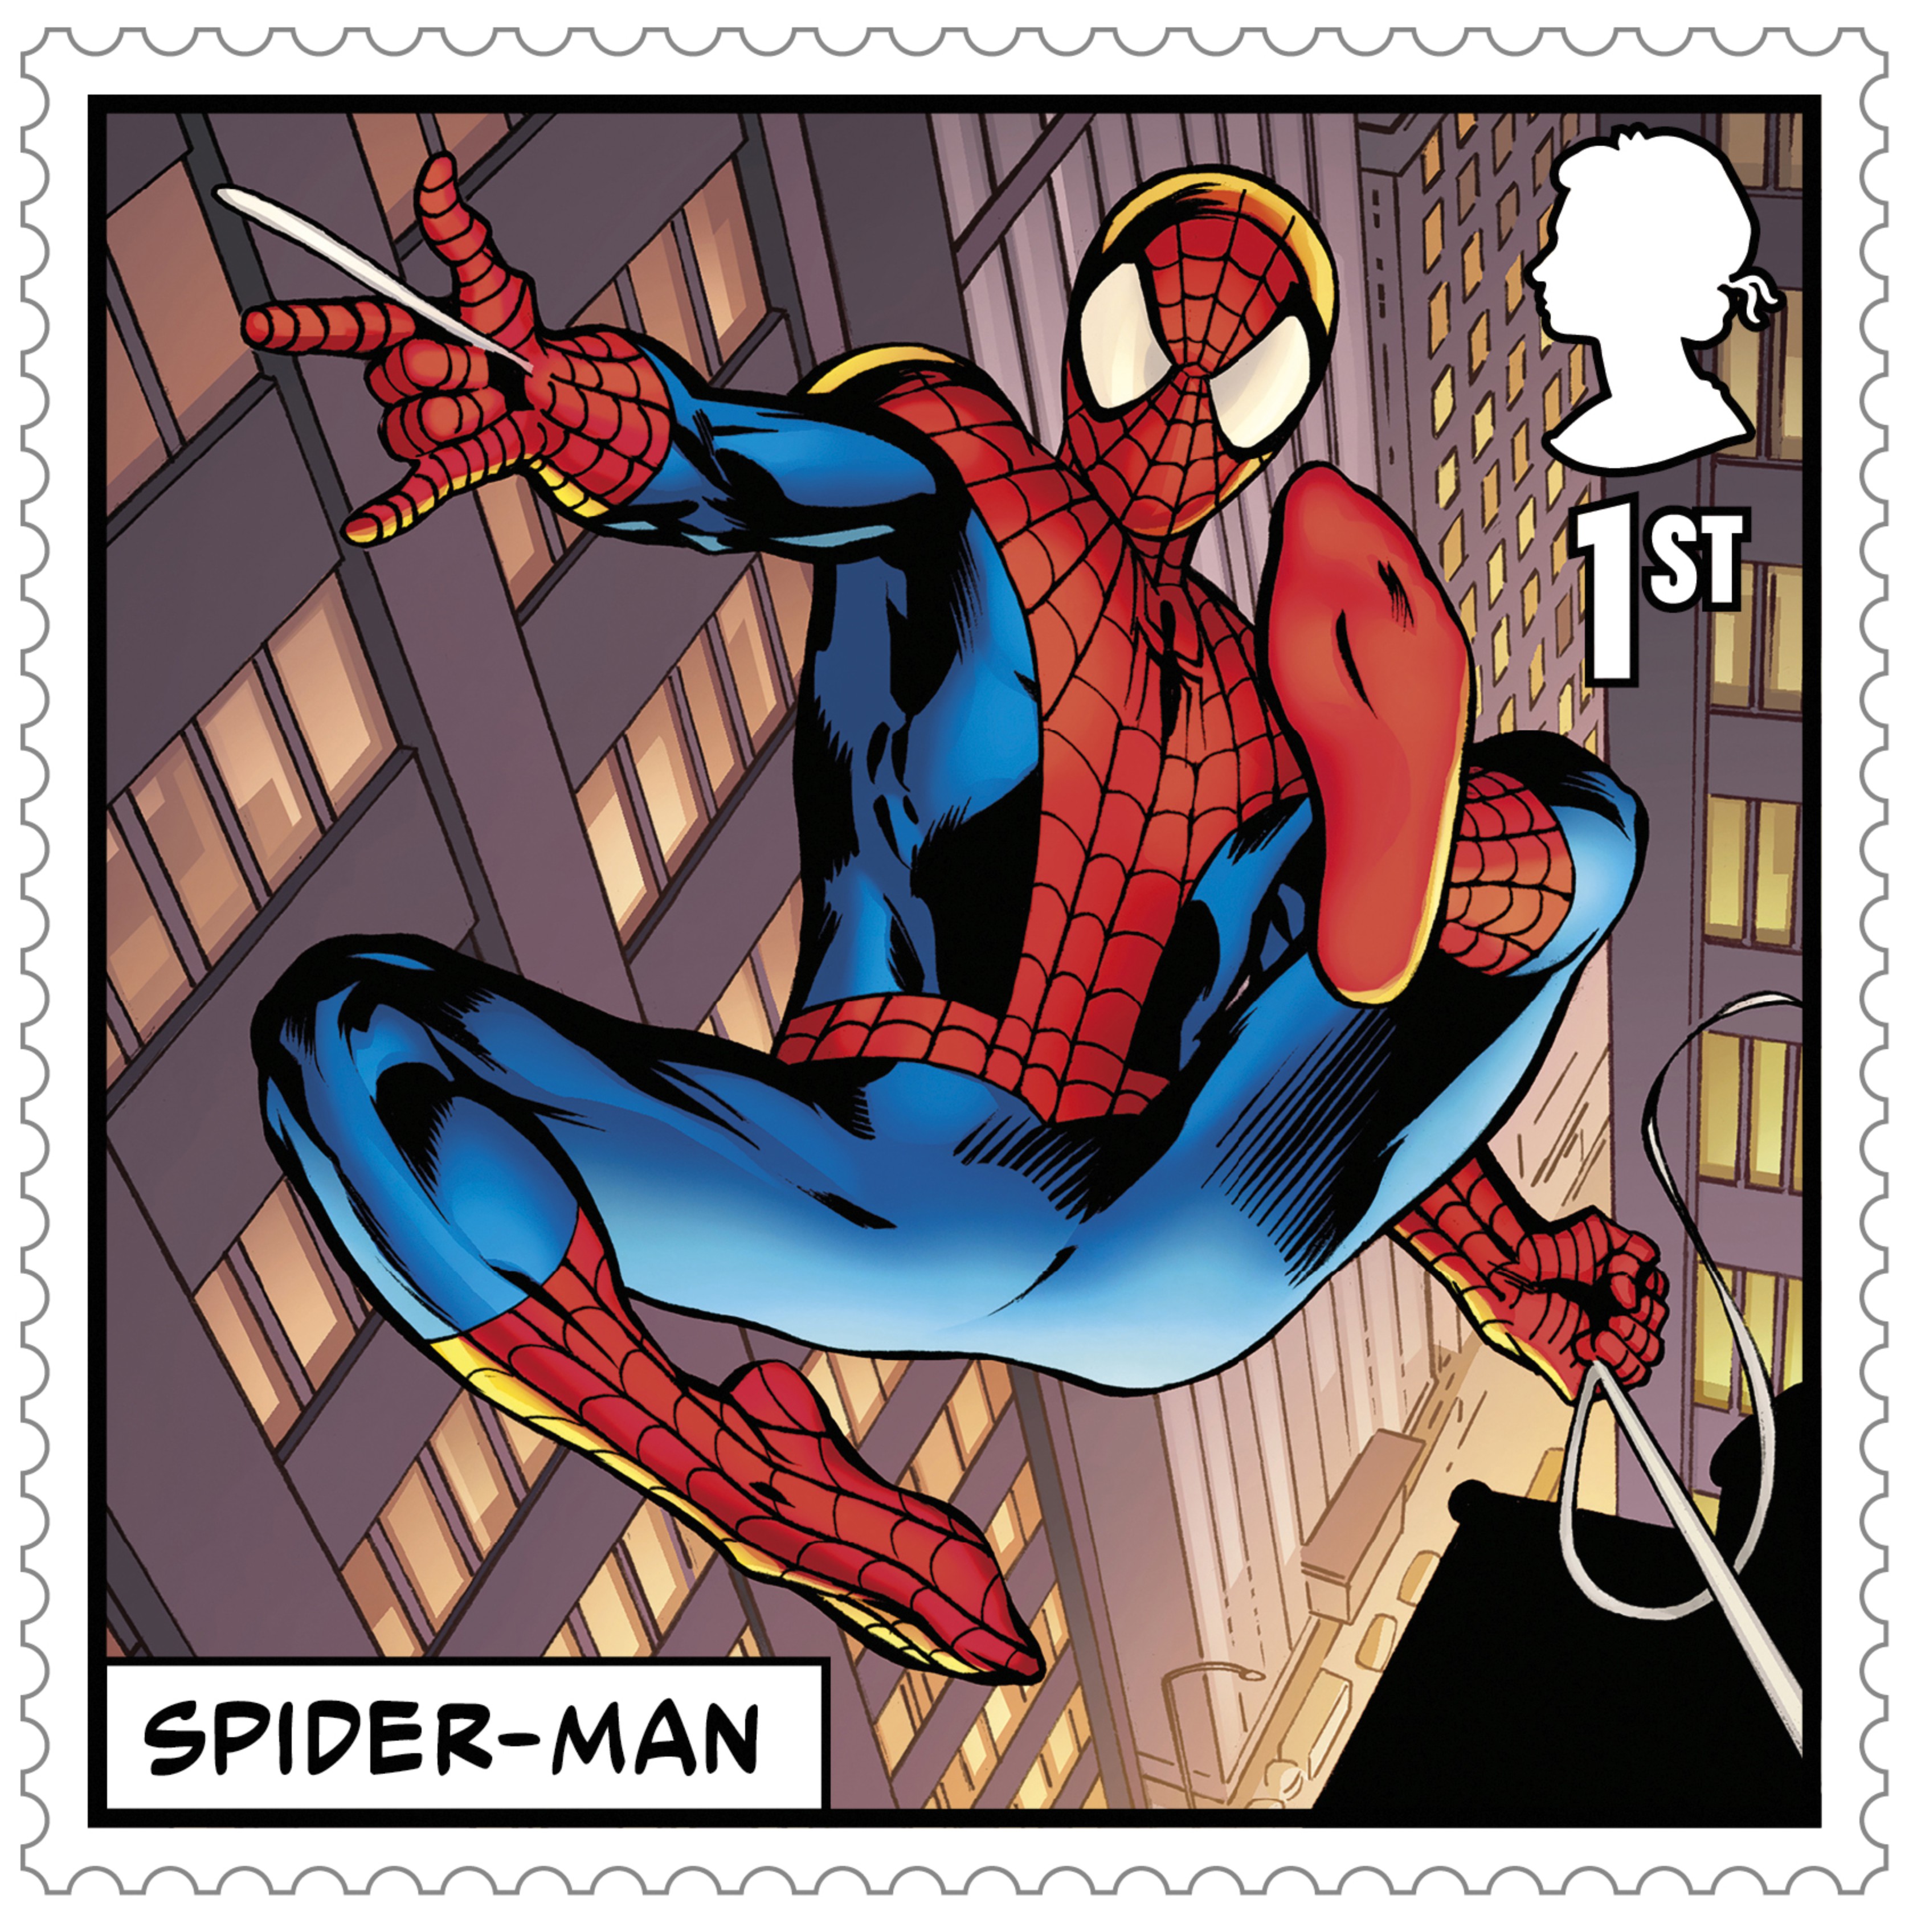 Spider-Man stamp